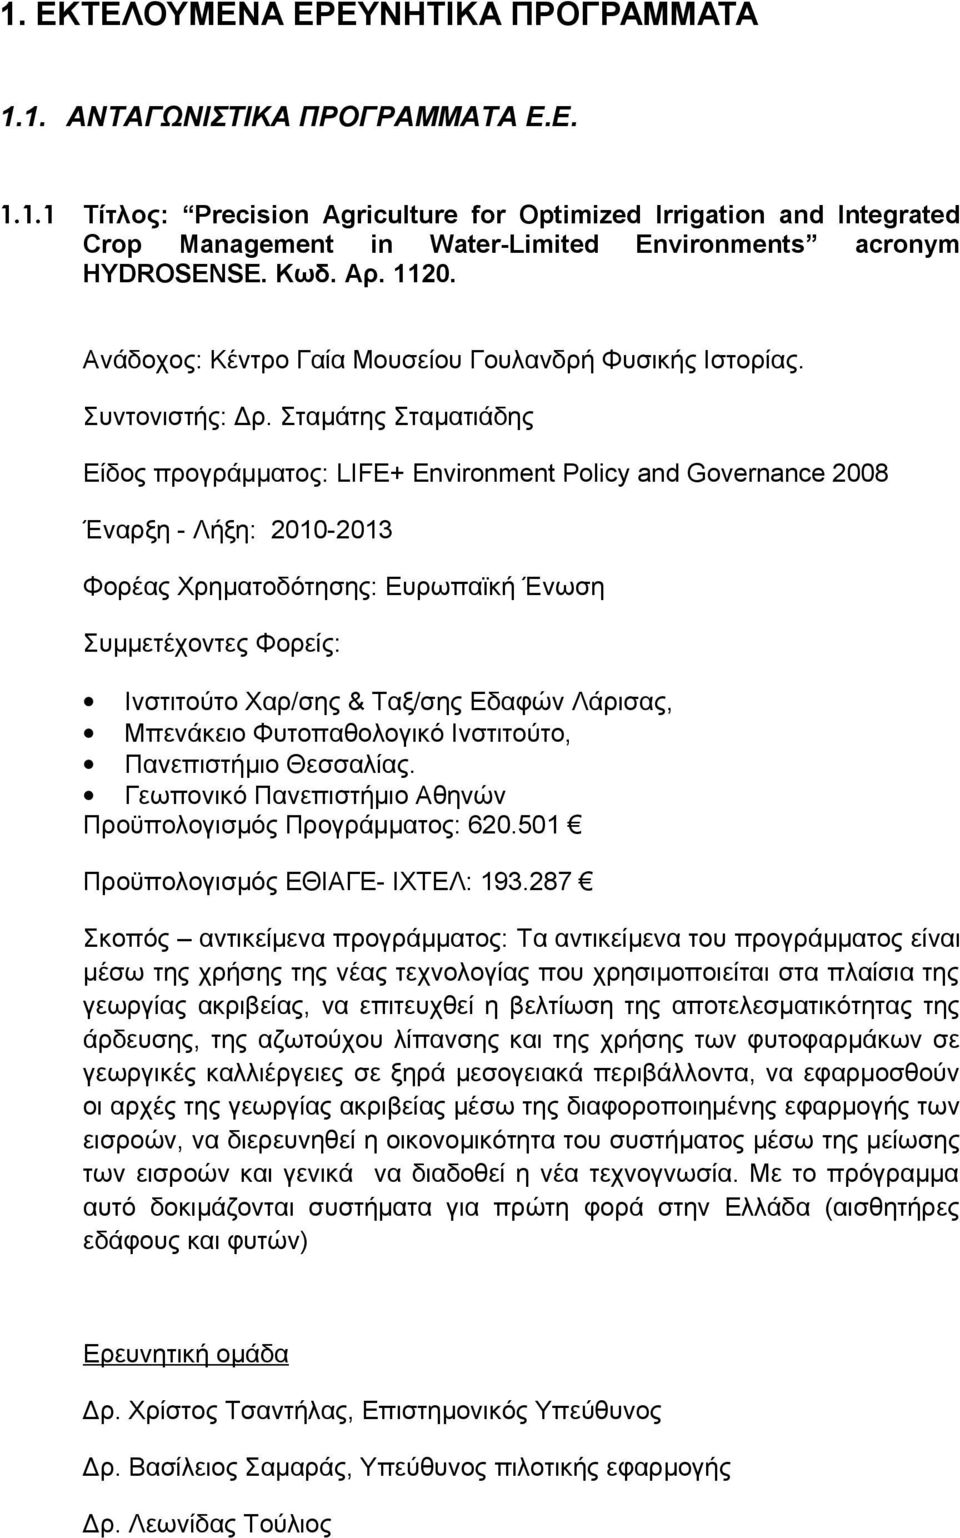 Σταμάτης Σταματιάδης Είδος προγράμματος: LIFE+ Environment Policy and Governance 2008 Έναρξη - Λήξη: 2010-2013 Φορέας Χρηματοδότησης: Ευρωπαϊκή Ένωση Συμμετέχοντες Φορείς: Ινστιτούτο Χαρ/σης &